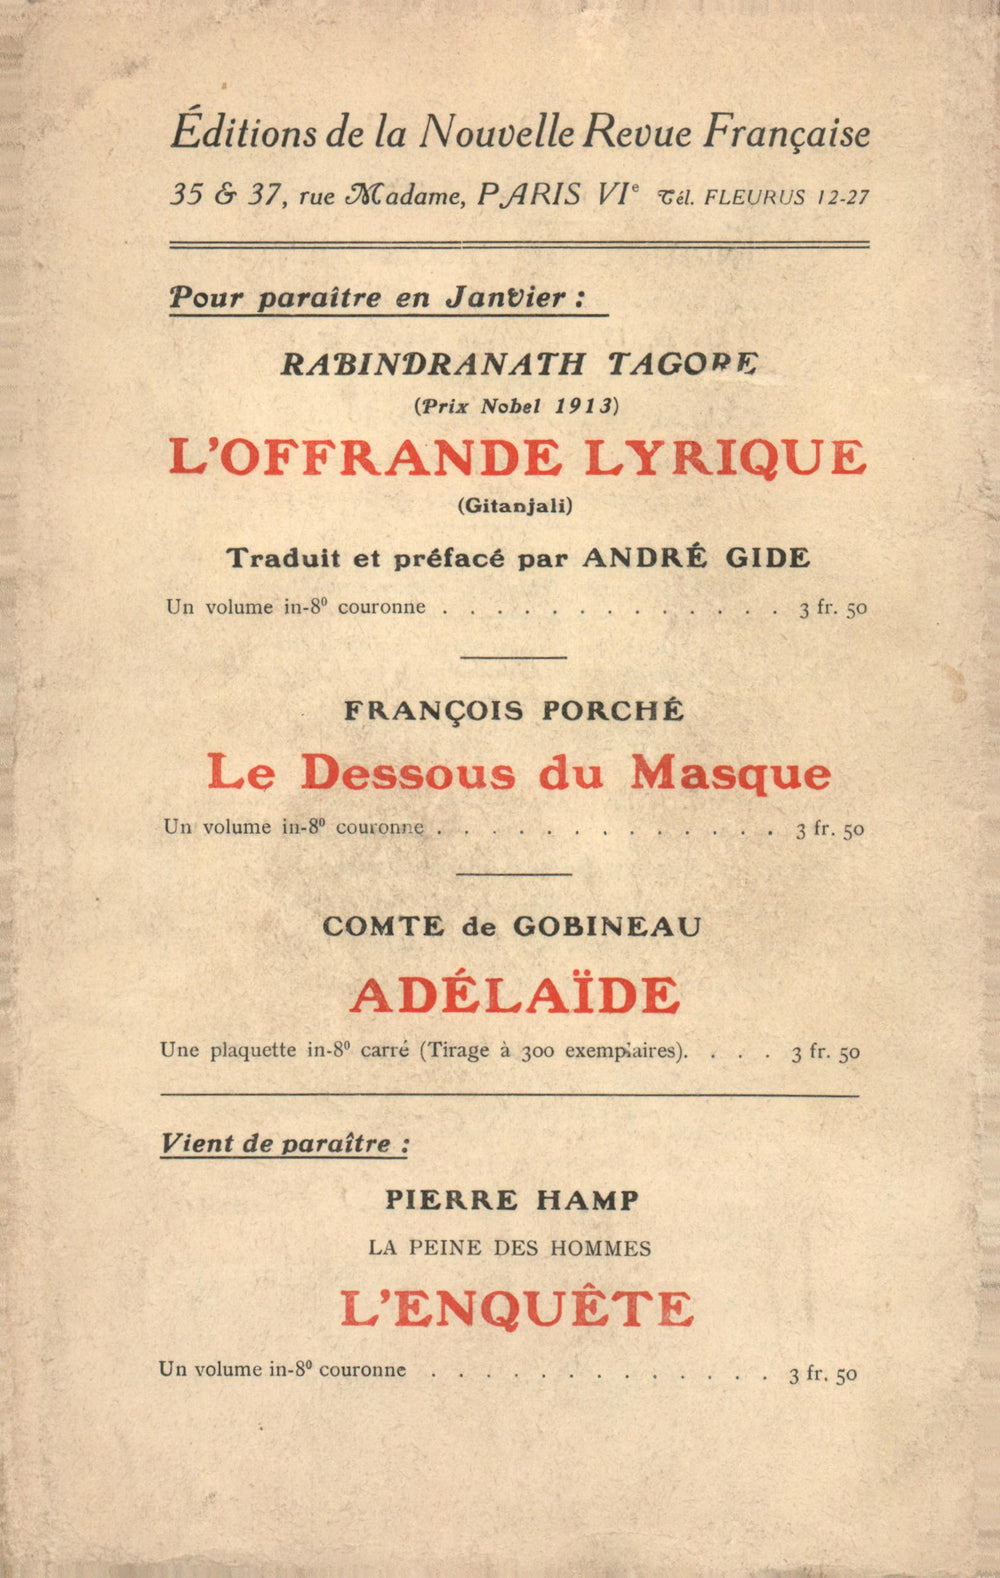 La Nouvelle Revue Française N' 61 (Janvier 1914)